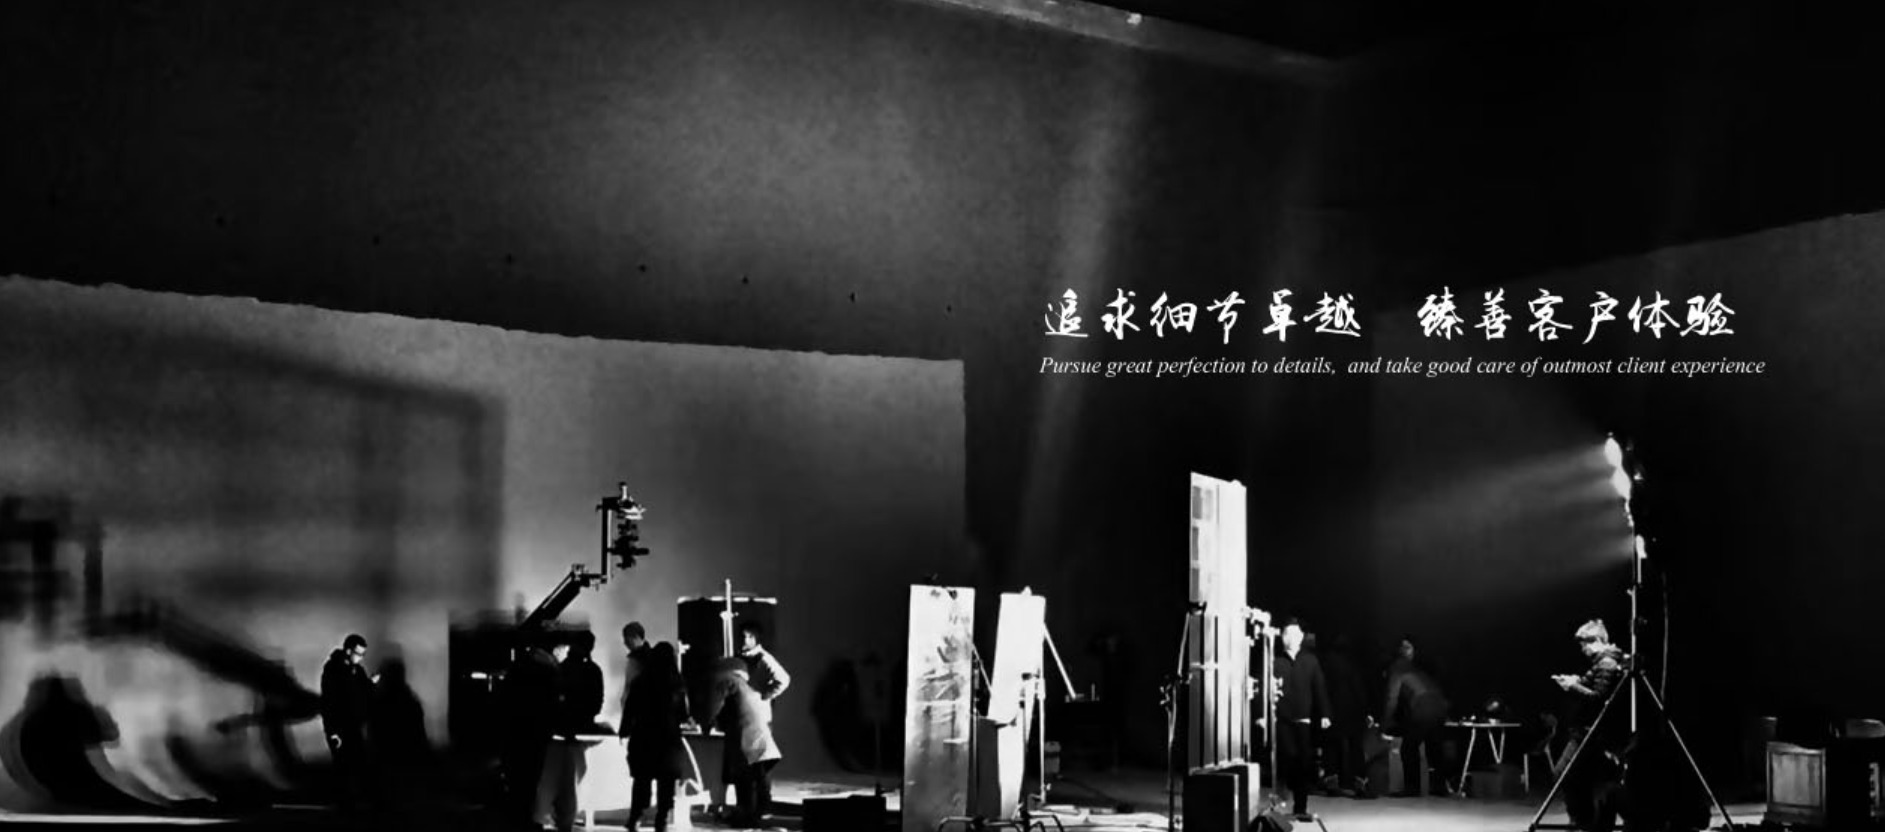 上海巧途集视频制作、企业形象、计算机网络工程策划为一体。